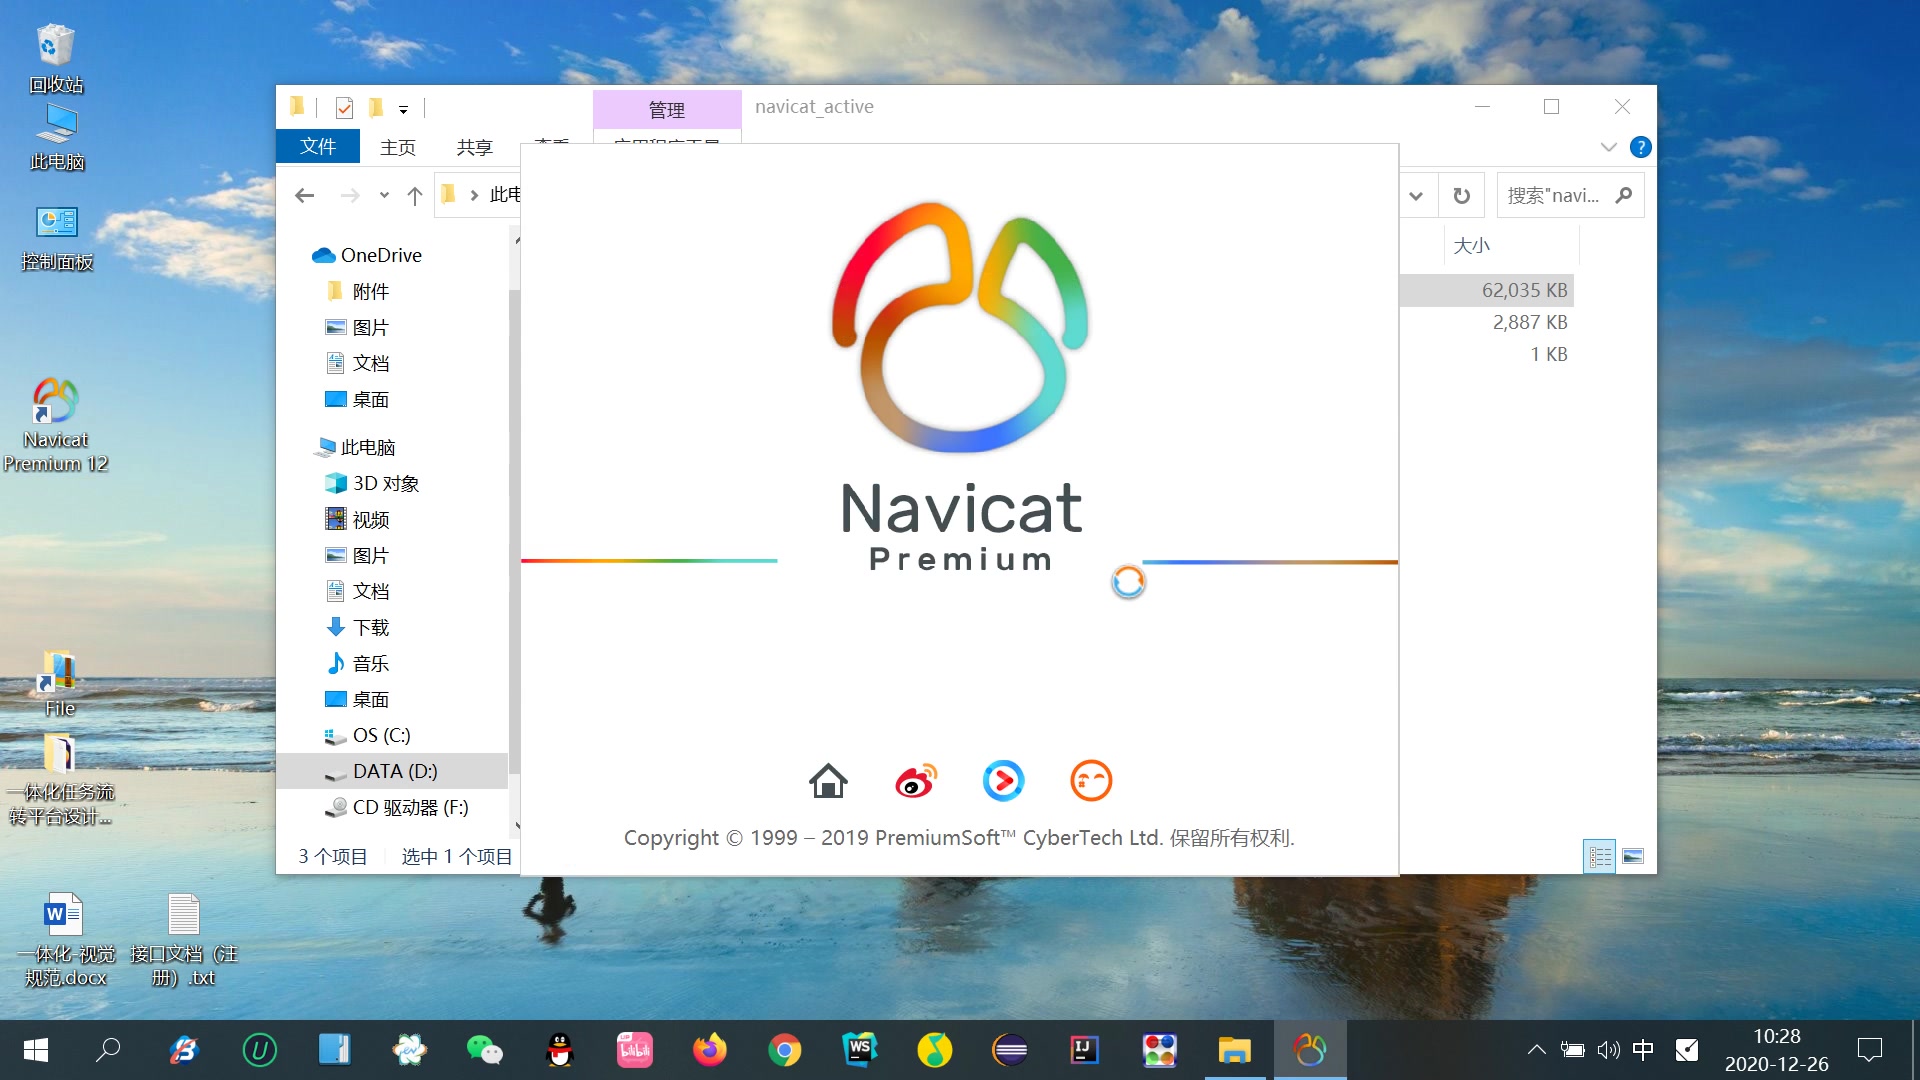 Navicat Premium 16.2.5 instaling